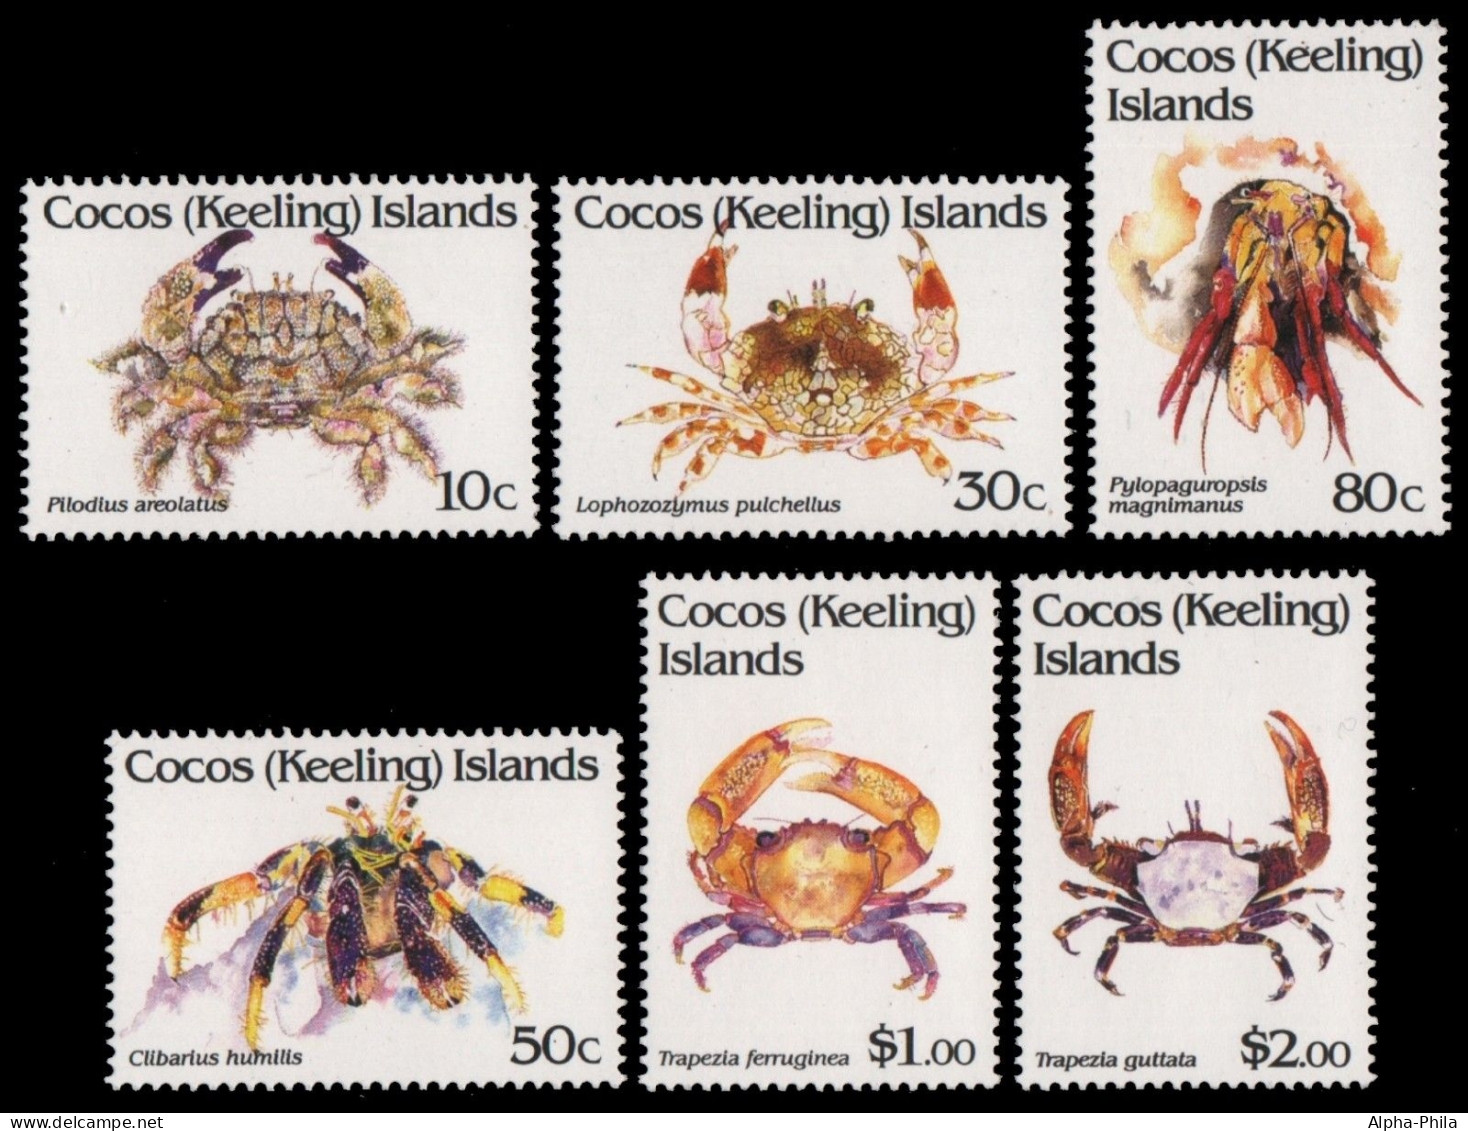 Kokos-Inseln 1992 - Mi-Nr. 274-279 ** - MNH - Krabben / Crabs - Cocos (Keeling) Islands